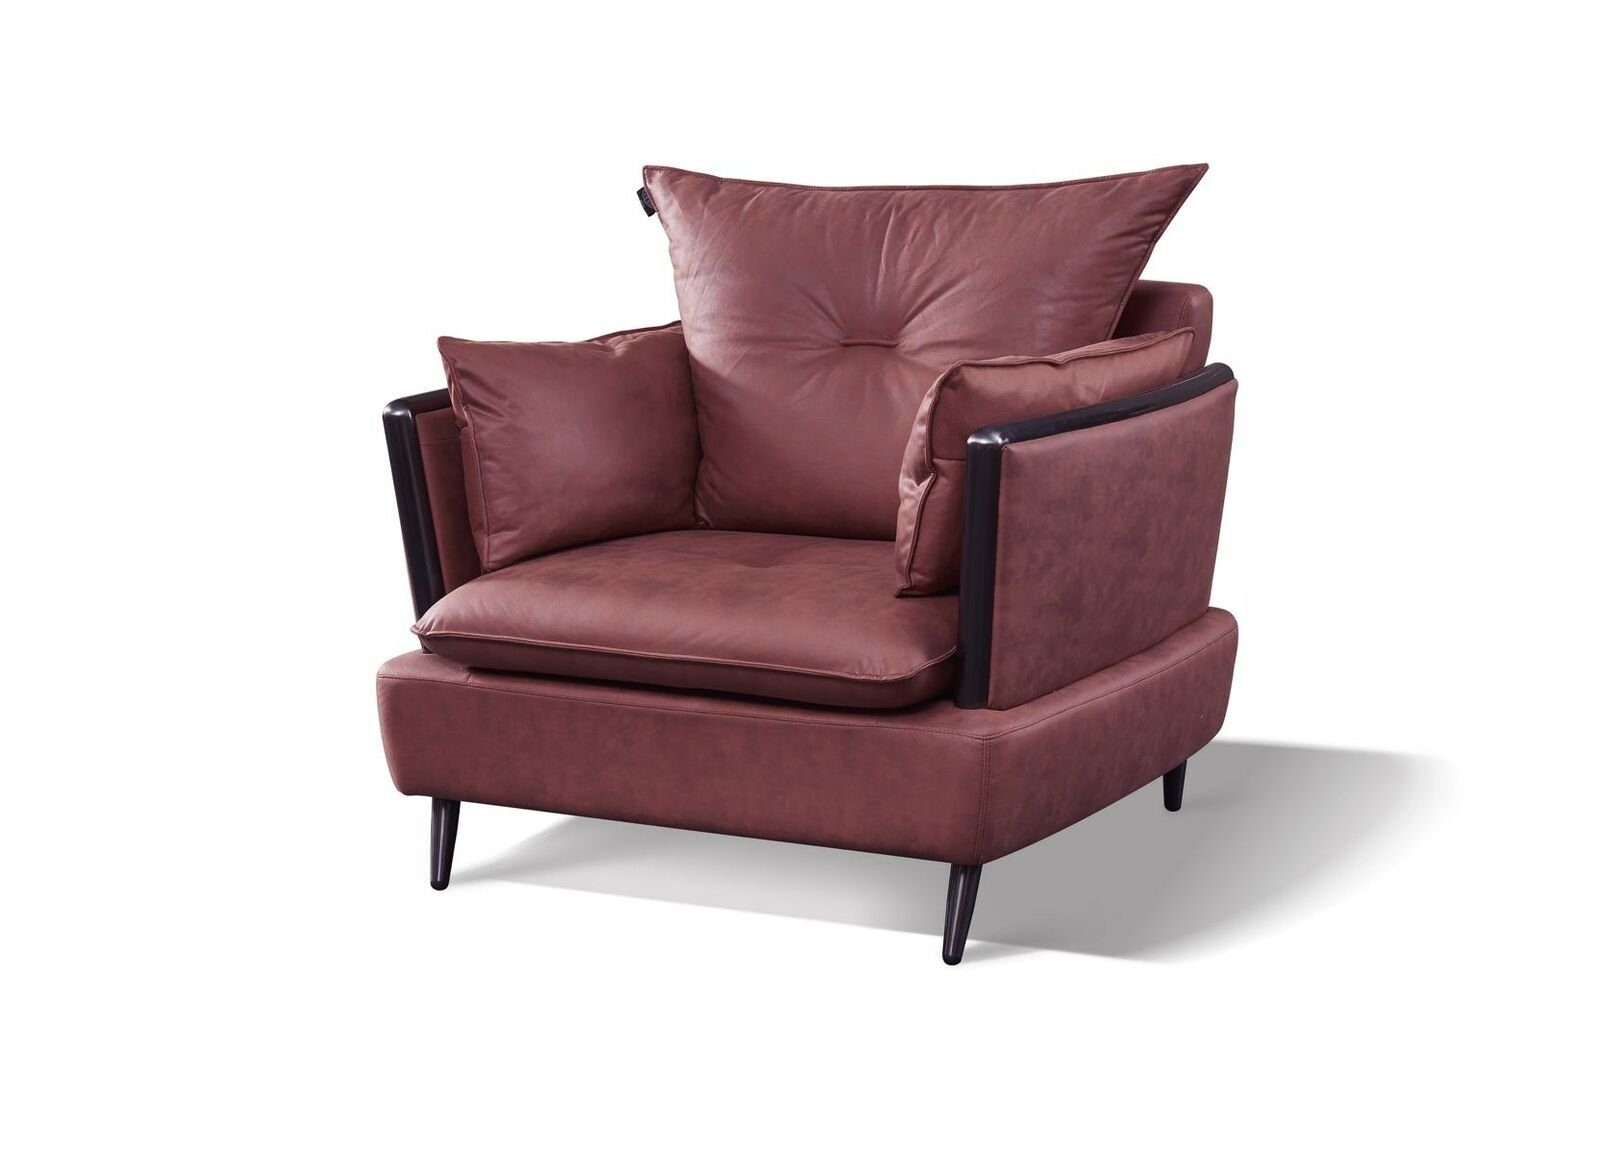 JVmoebel Sofa Graue Sofagarnitur Wohnzimmer Couchen Luxus Sessel Sofas 3 tlg, Made in Europe Rot | Alle Sofas